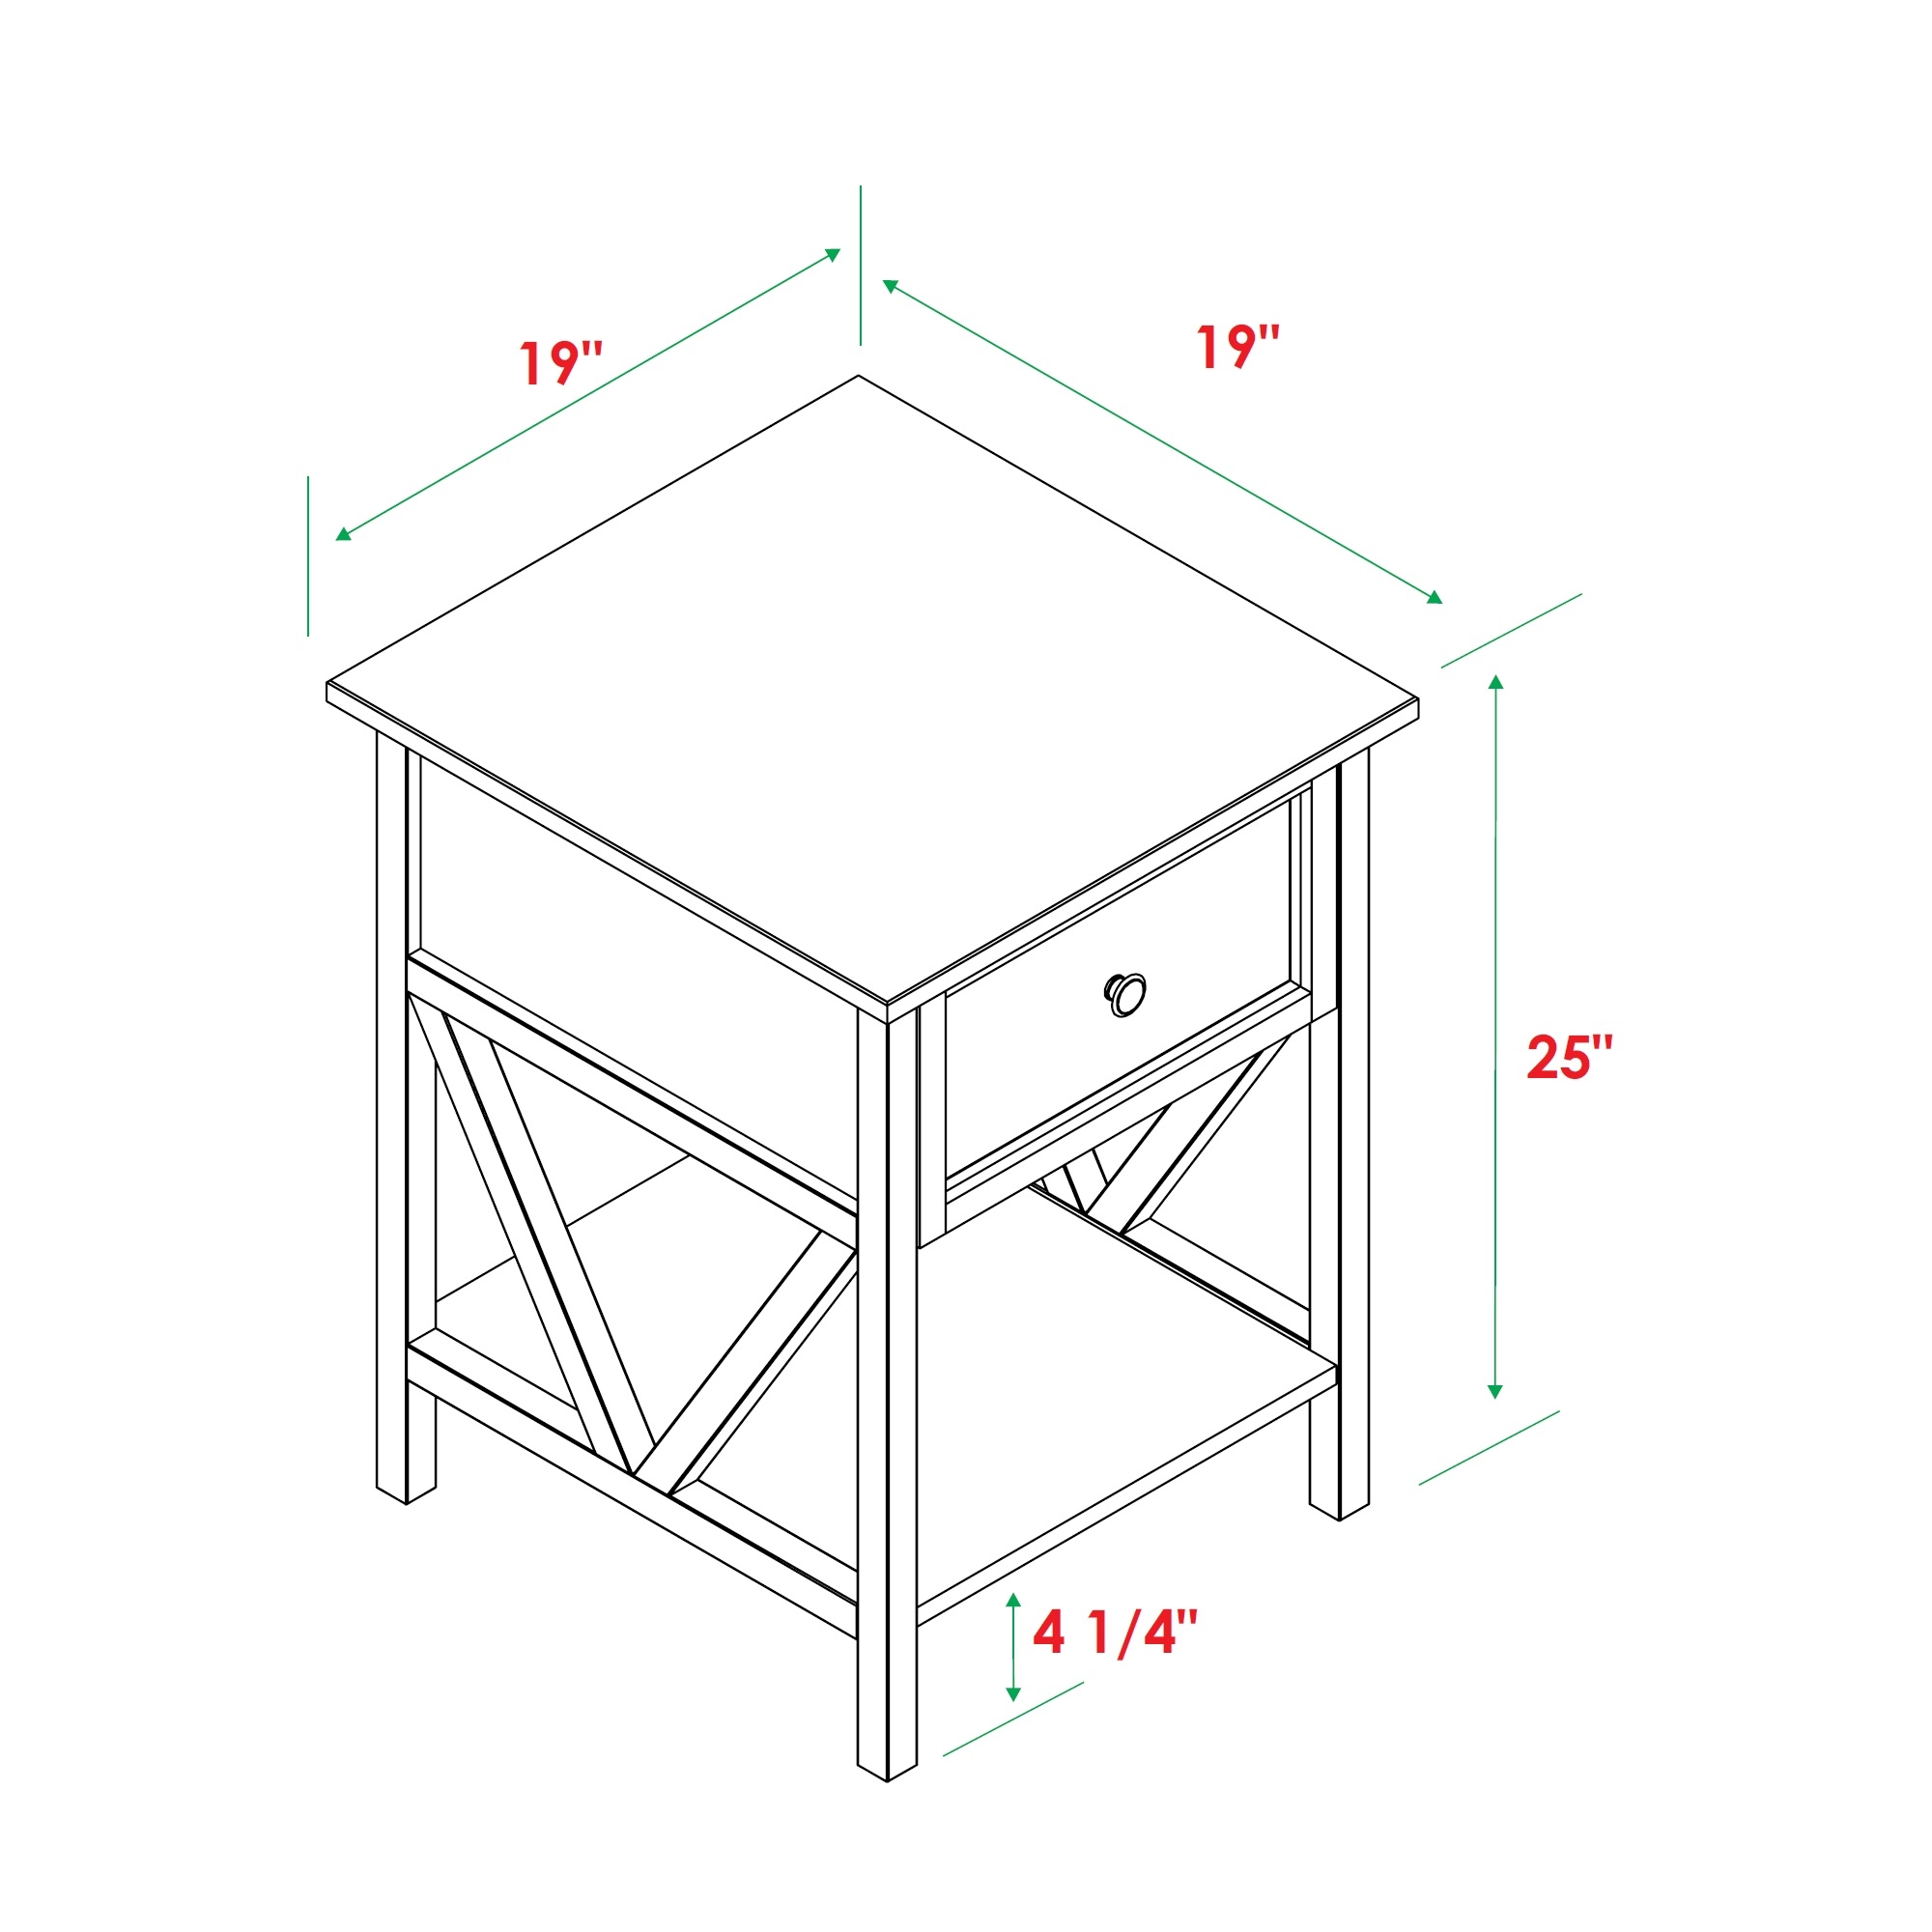 Natalee 19" 1 Drawer Wood Side Table - Rustic Oak/Black - Image 1